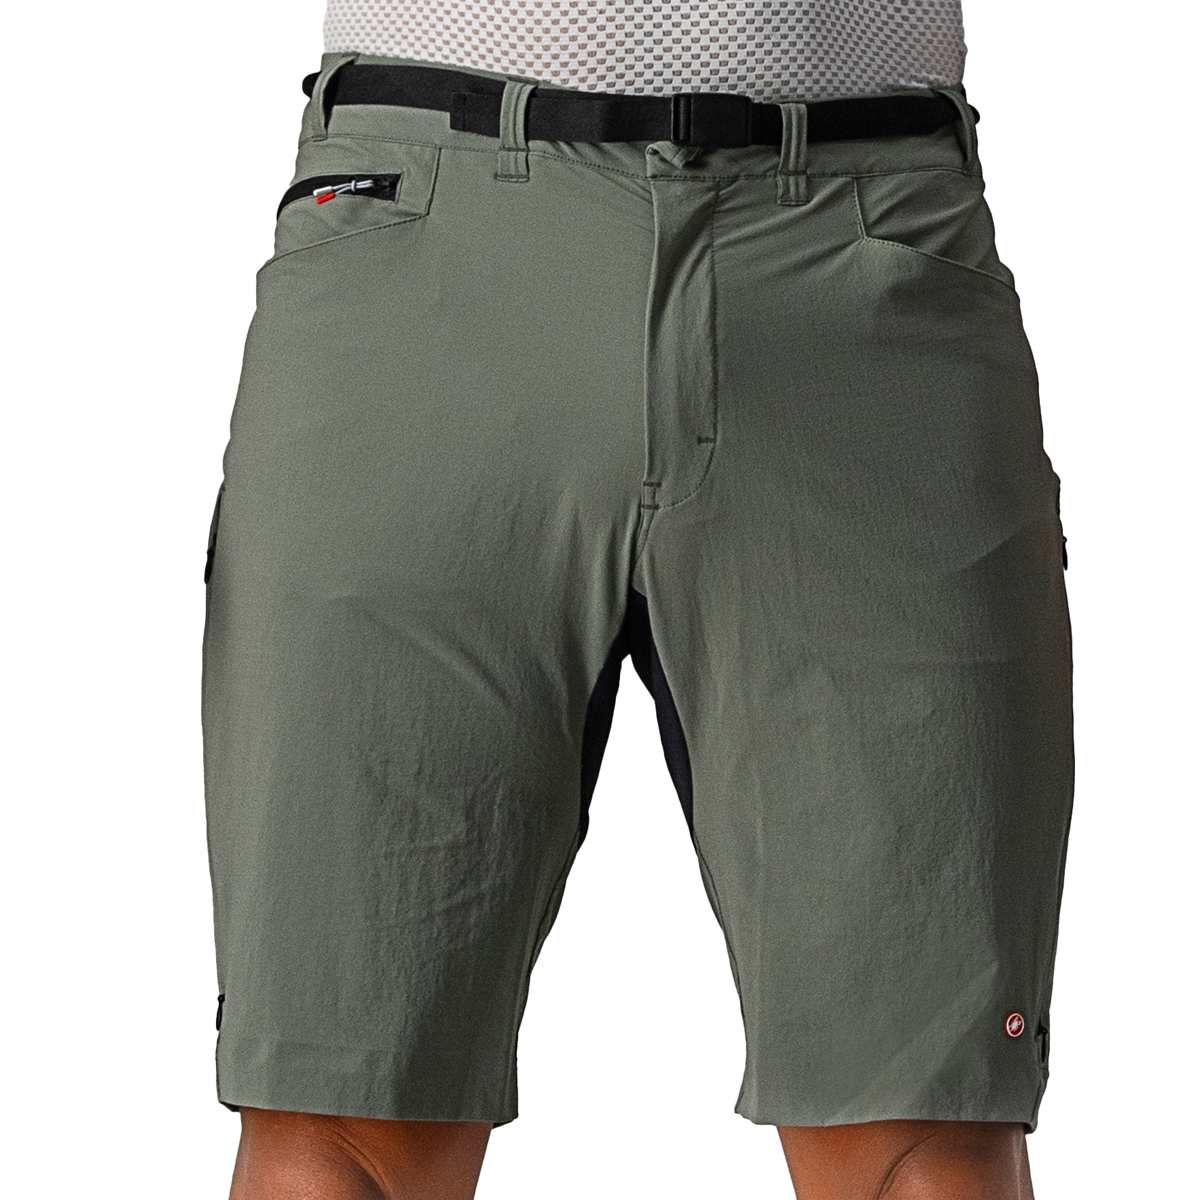 Produktbild von Castelli Unlimited Trail Baggy Shorts - forest grey 089